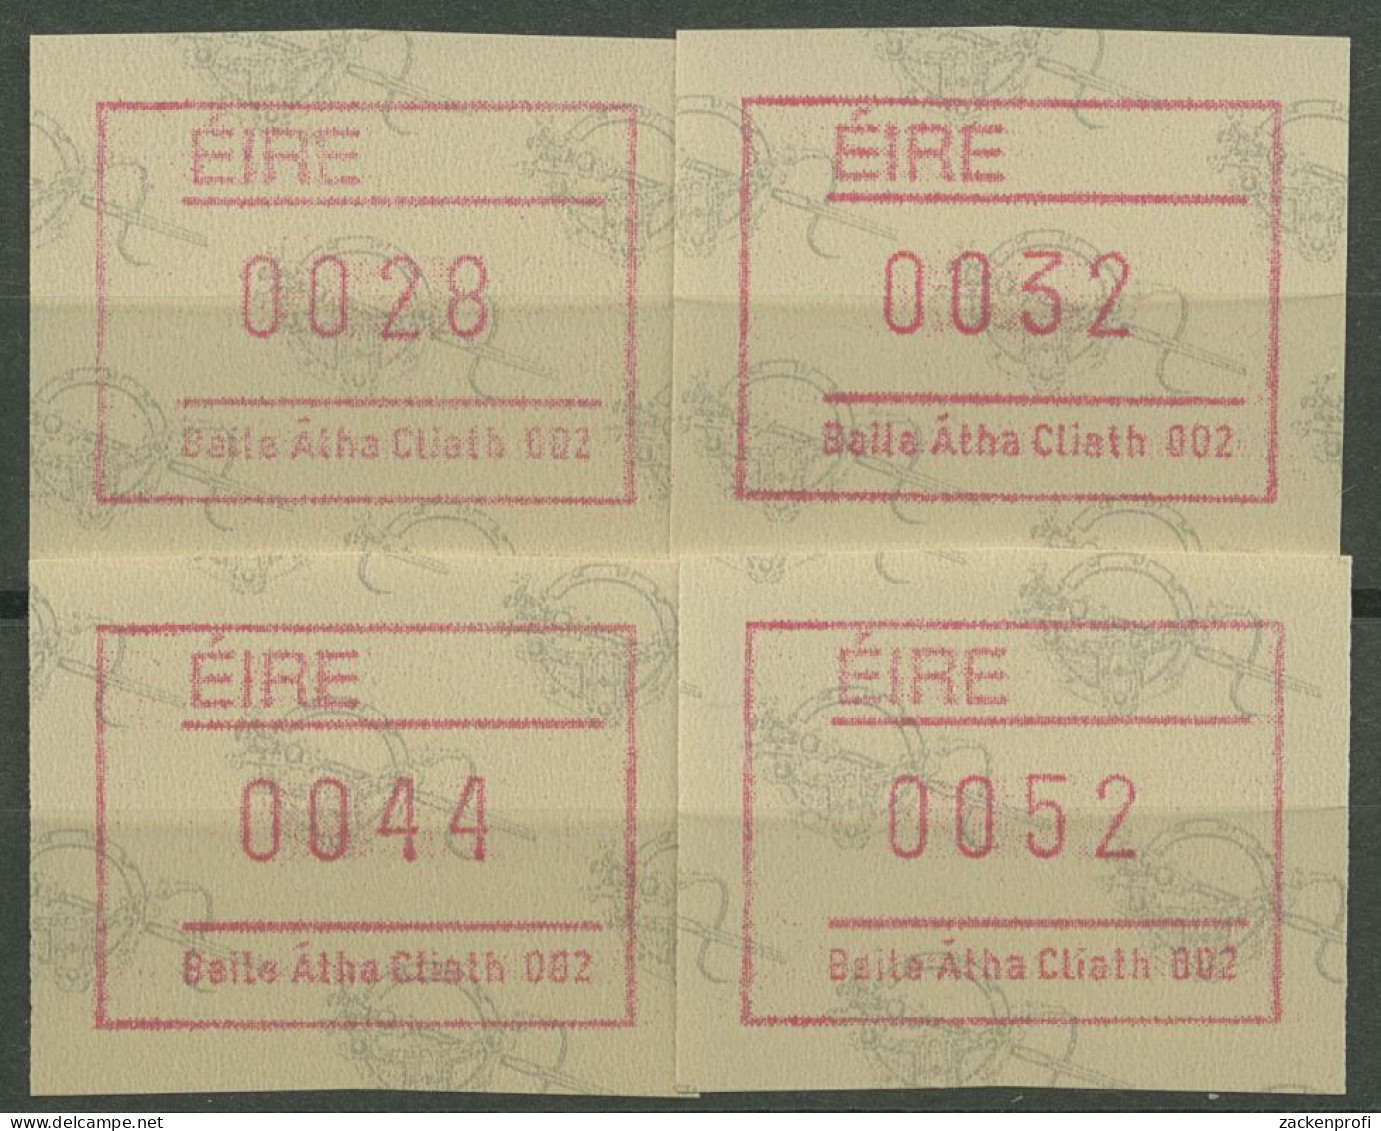 Irland Automatenmarken 1992 Satz 4 Werte Automat 002 ATM 4.2 S2 Postfrisch - Vignettes D'affranchissement (Frama)